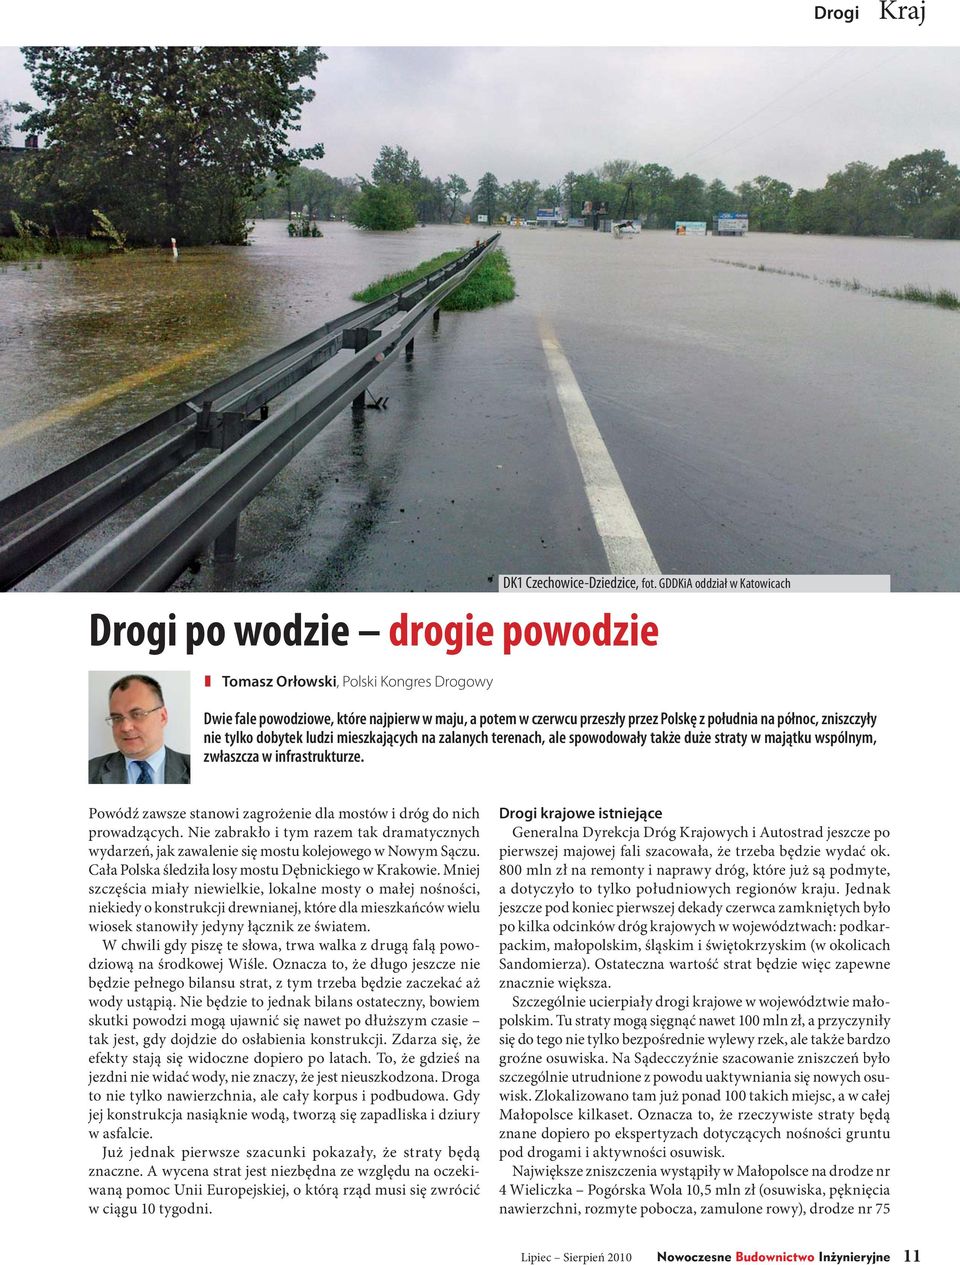 terenach, ale spowodowały także duże straty w majątku wspólnym, zwłaszcza w infrastrukturze. Powódź zawsze stanowi zagrożenie dla mostów i dróg do nich prowadzących.